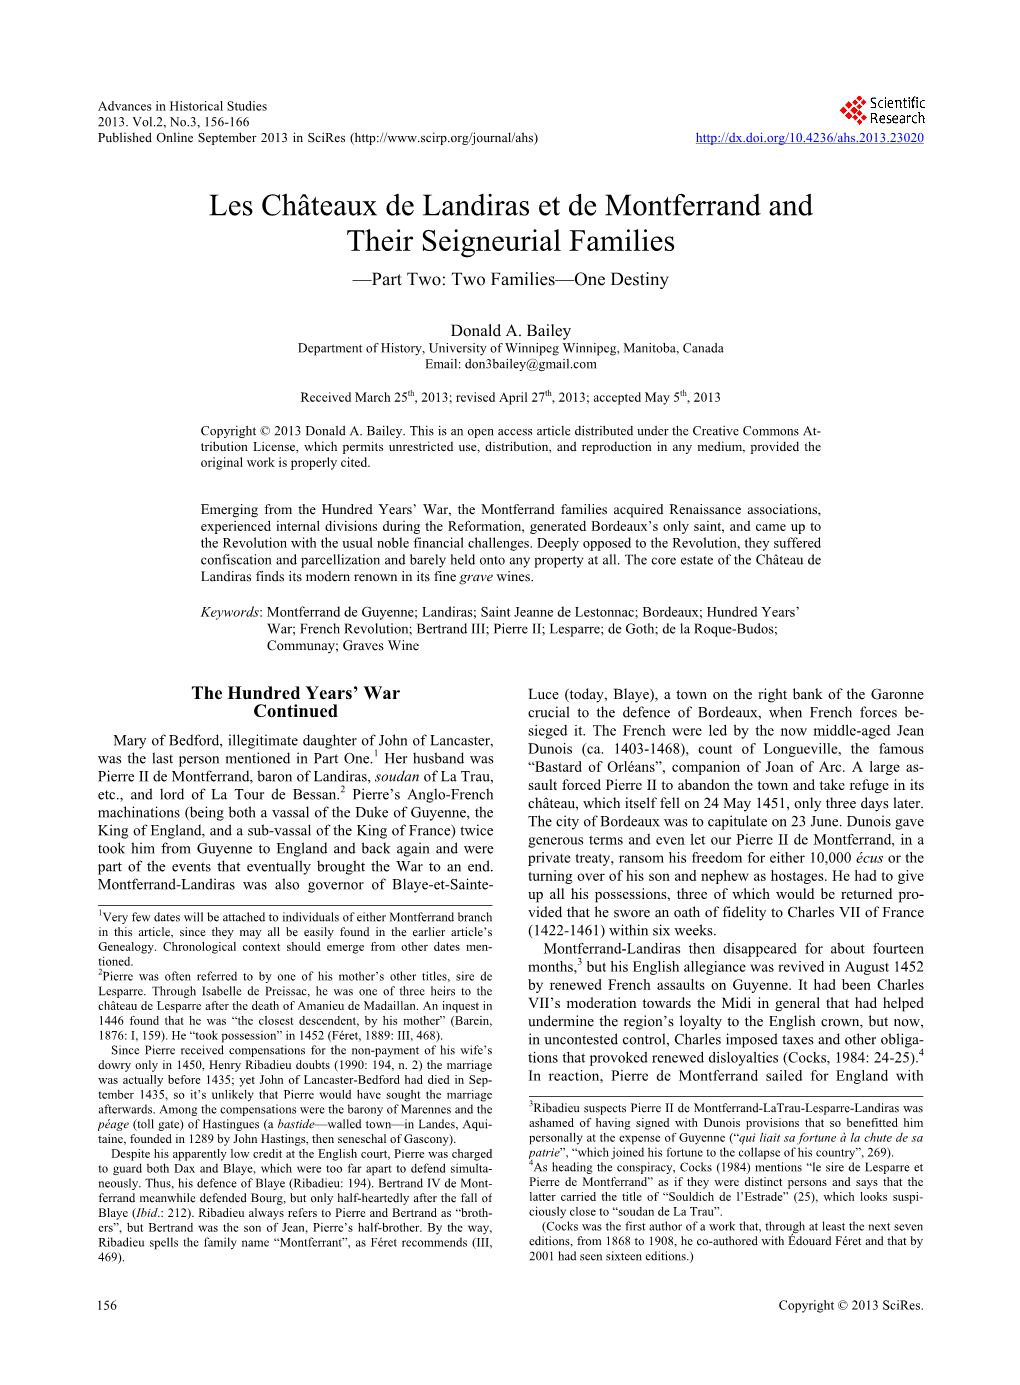 Les Châteaux De Landiras Et De Montferrand and Their Seigneurial Families —Part Two: Two Families—One Destiny